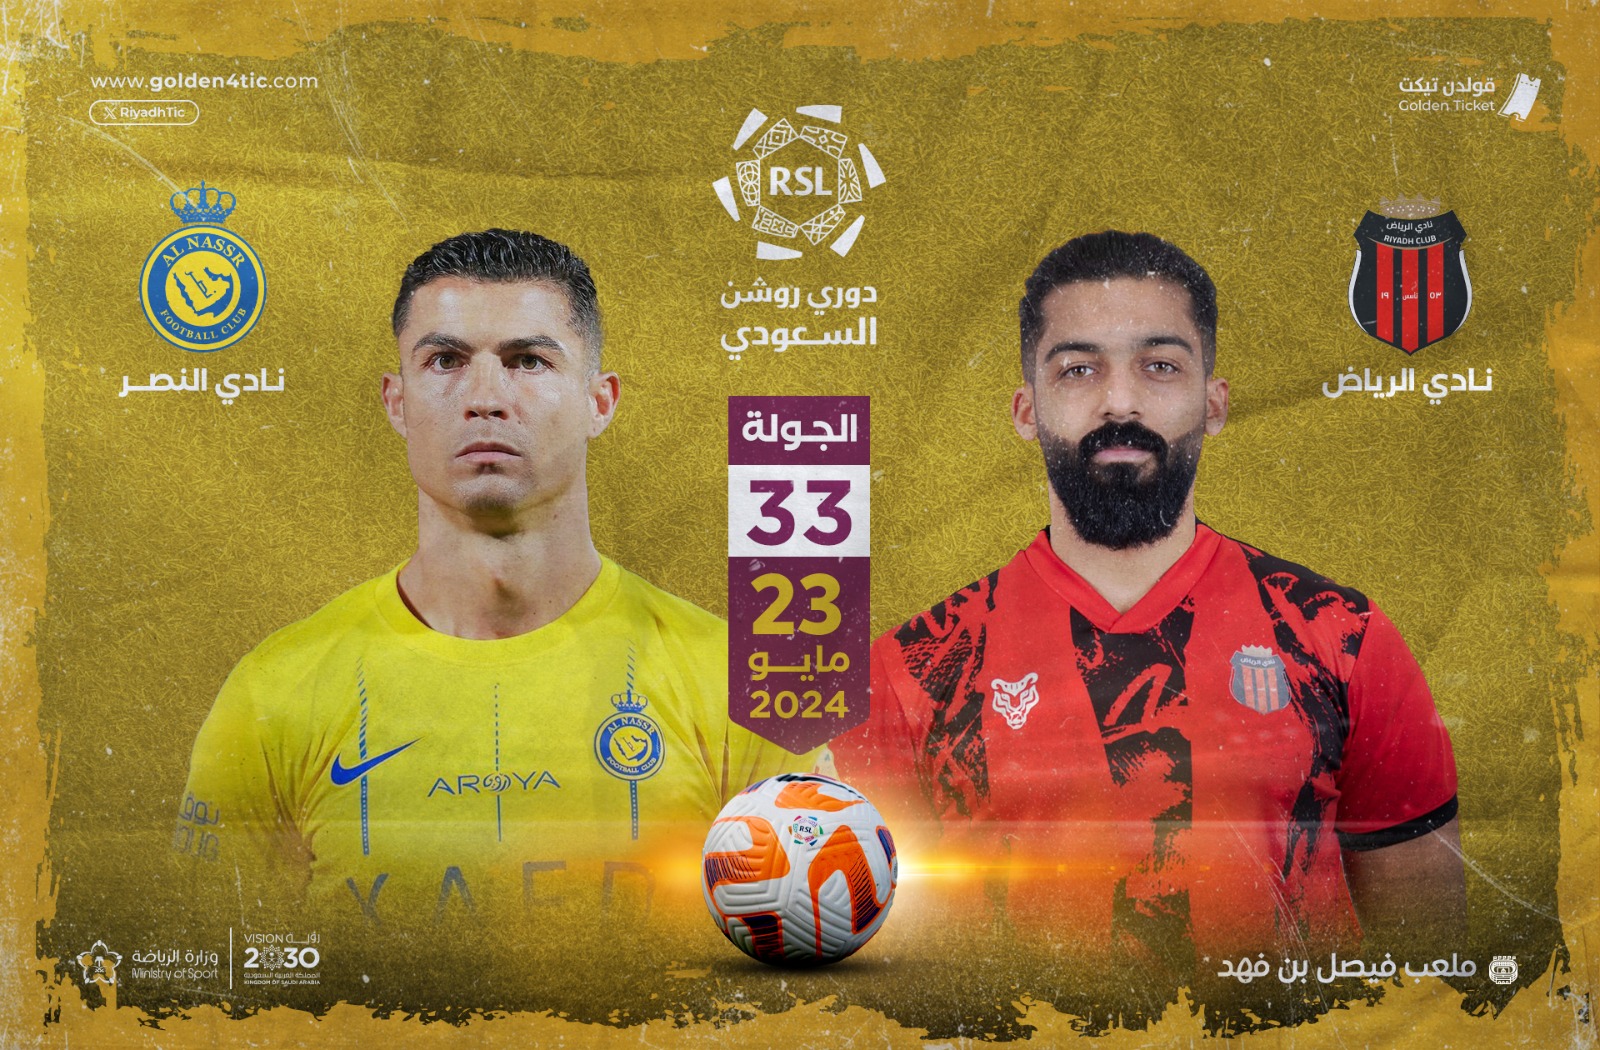 مباراة النصر و الرياض في دوري روشن الجولة 33